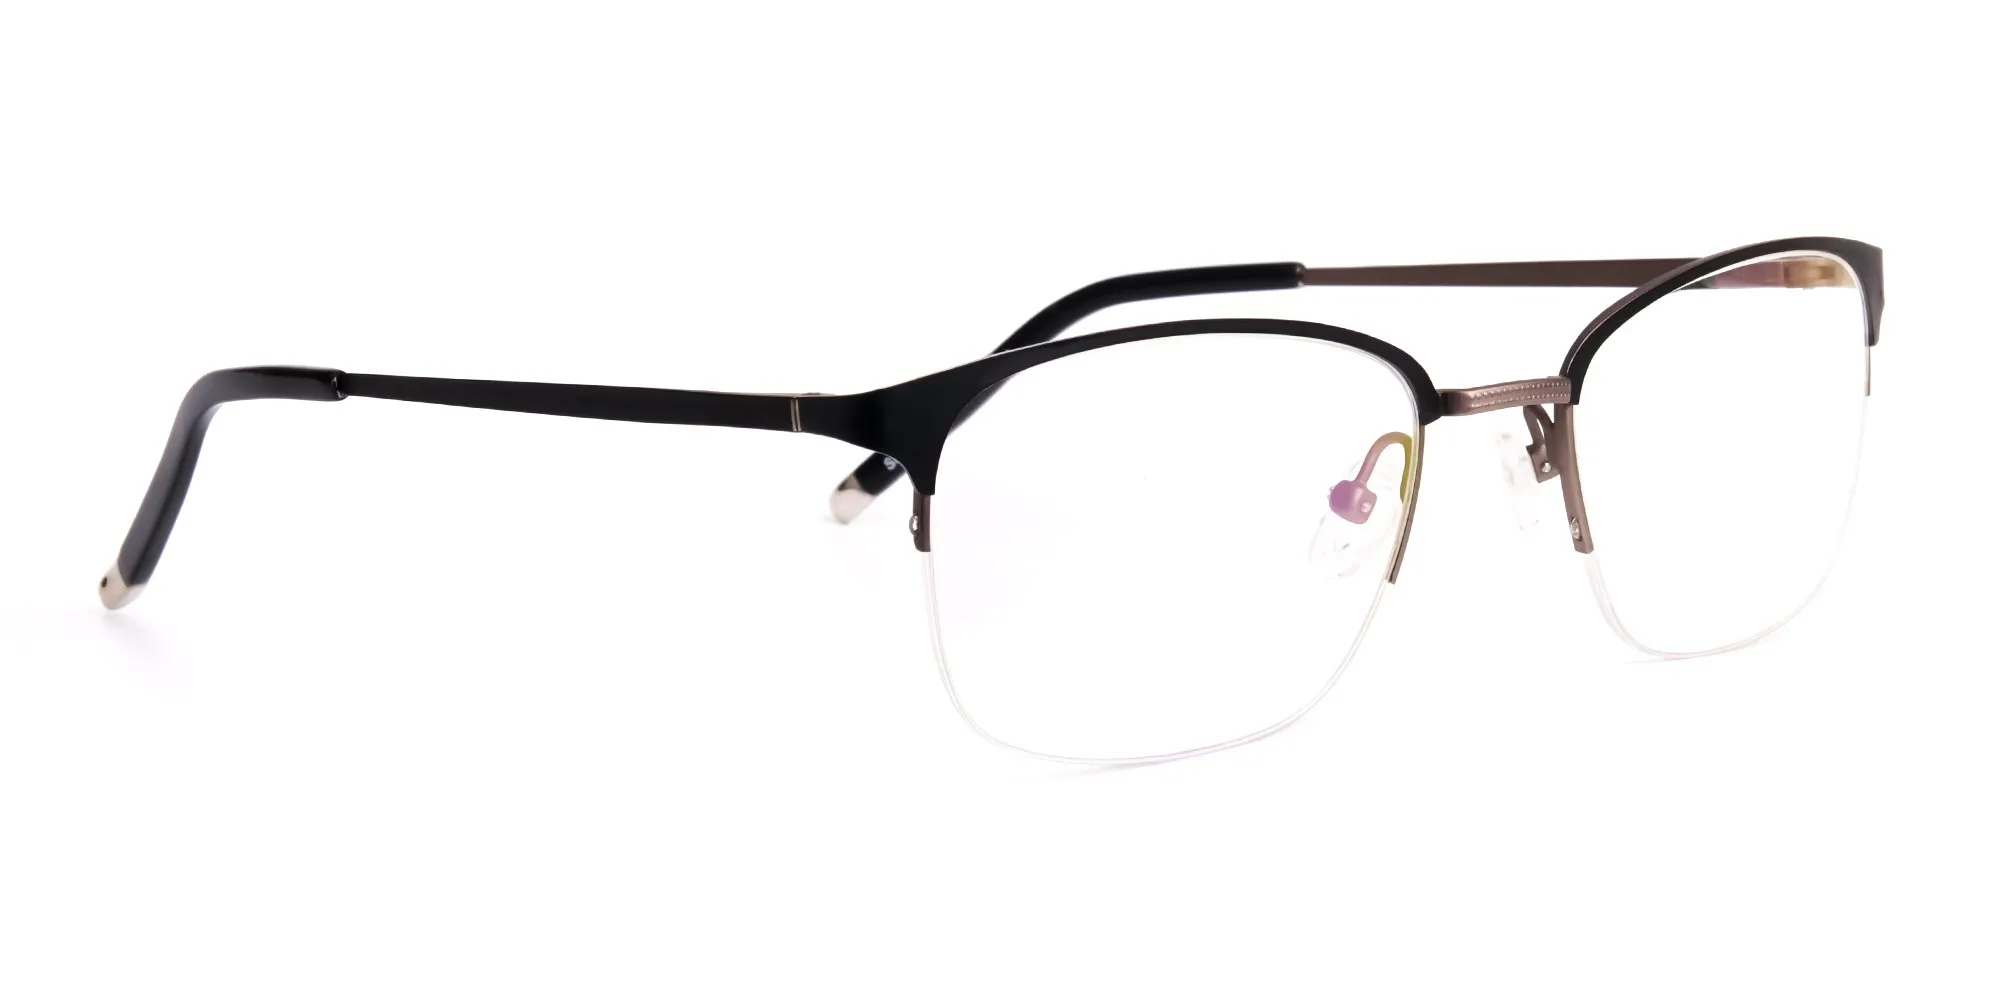 oval and rectangular black full rim glasses frames-2